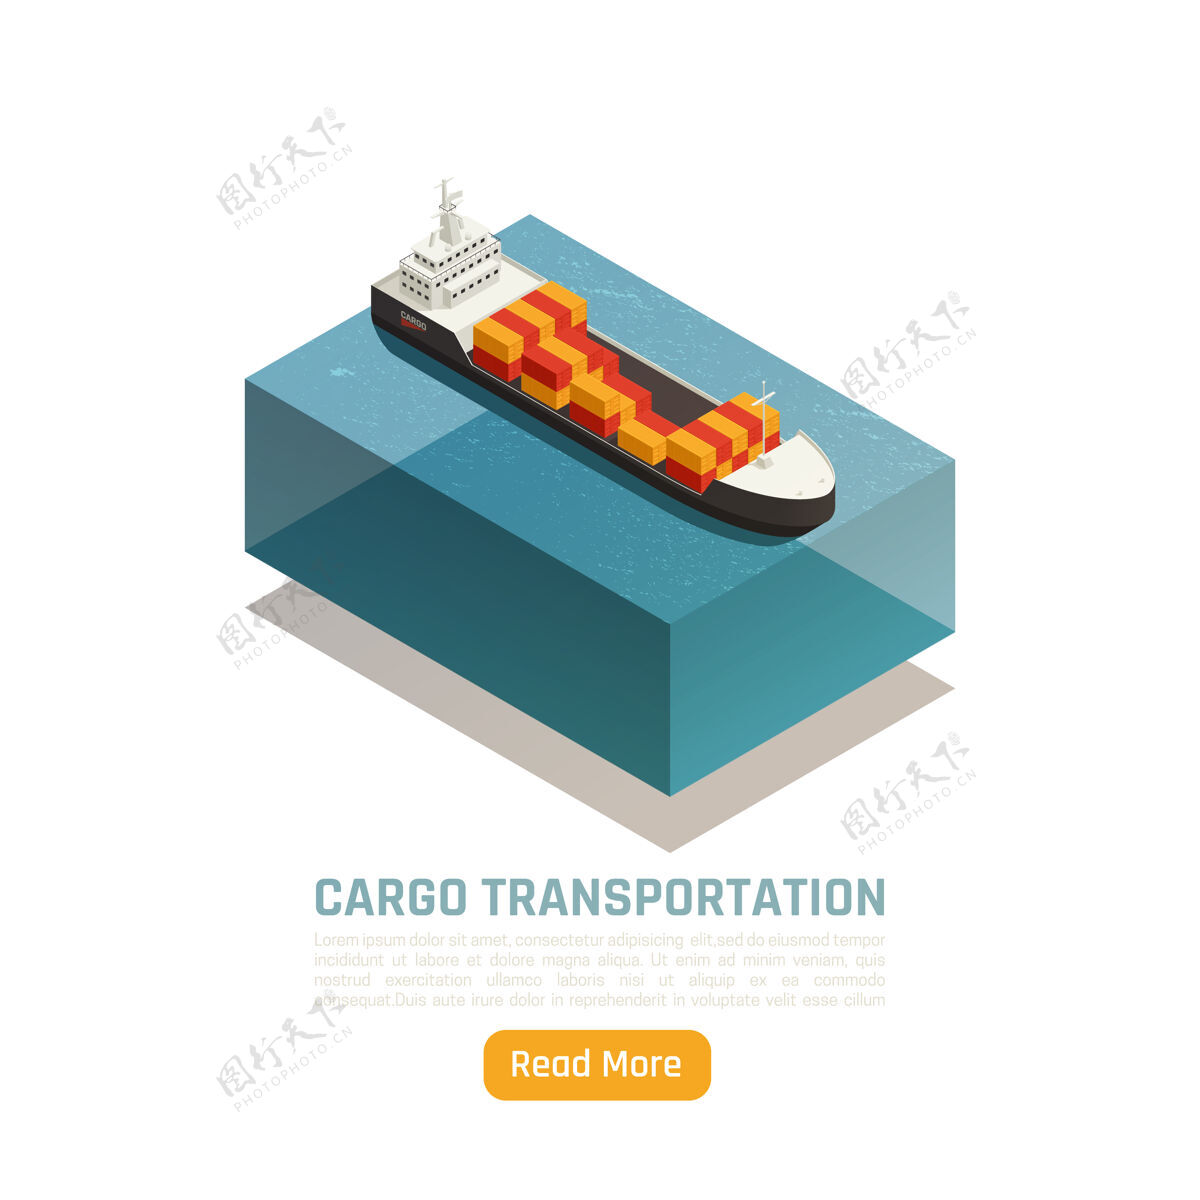 集装箱货物运输物流配送等轴测图与船舶装载货物集装箱和文字装载货运物流